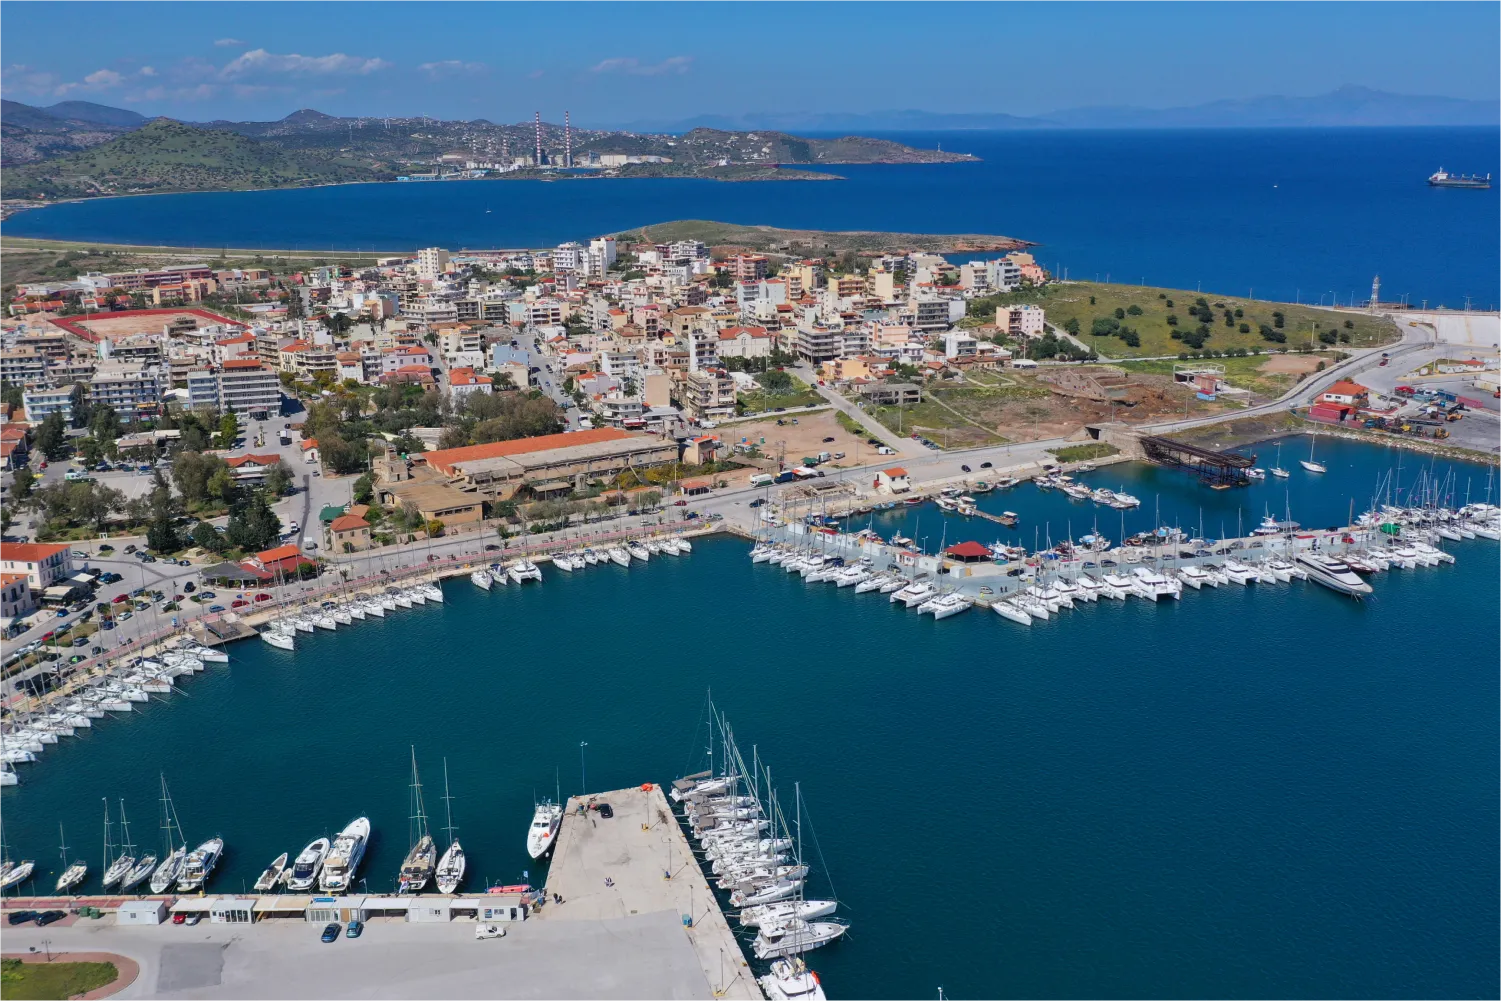 Luftaufnahme des Hafens von Lavrio mit geparkten Yachten